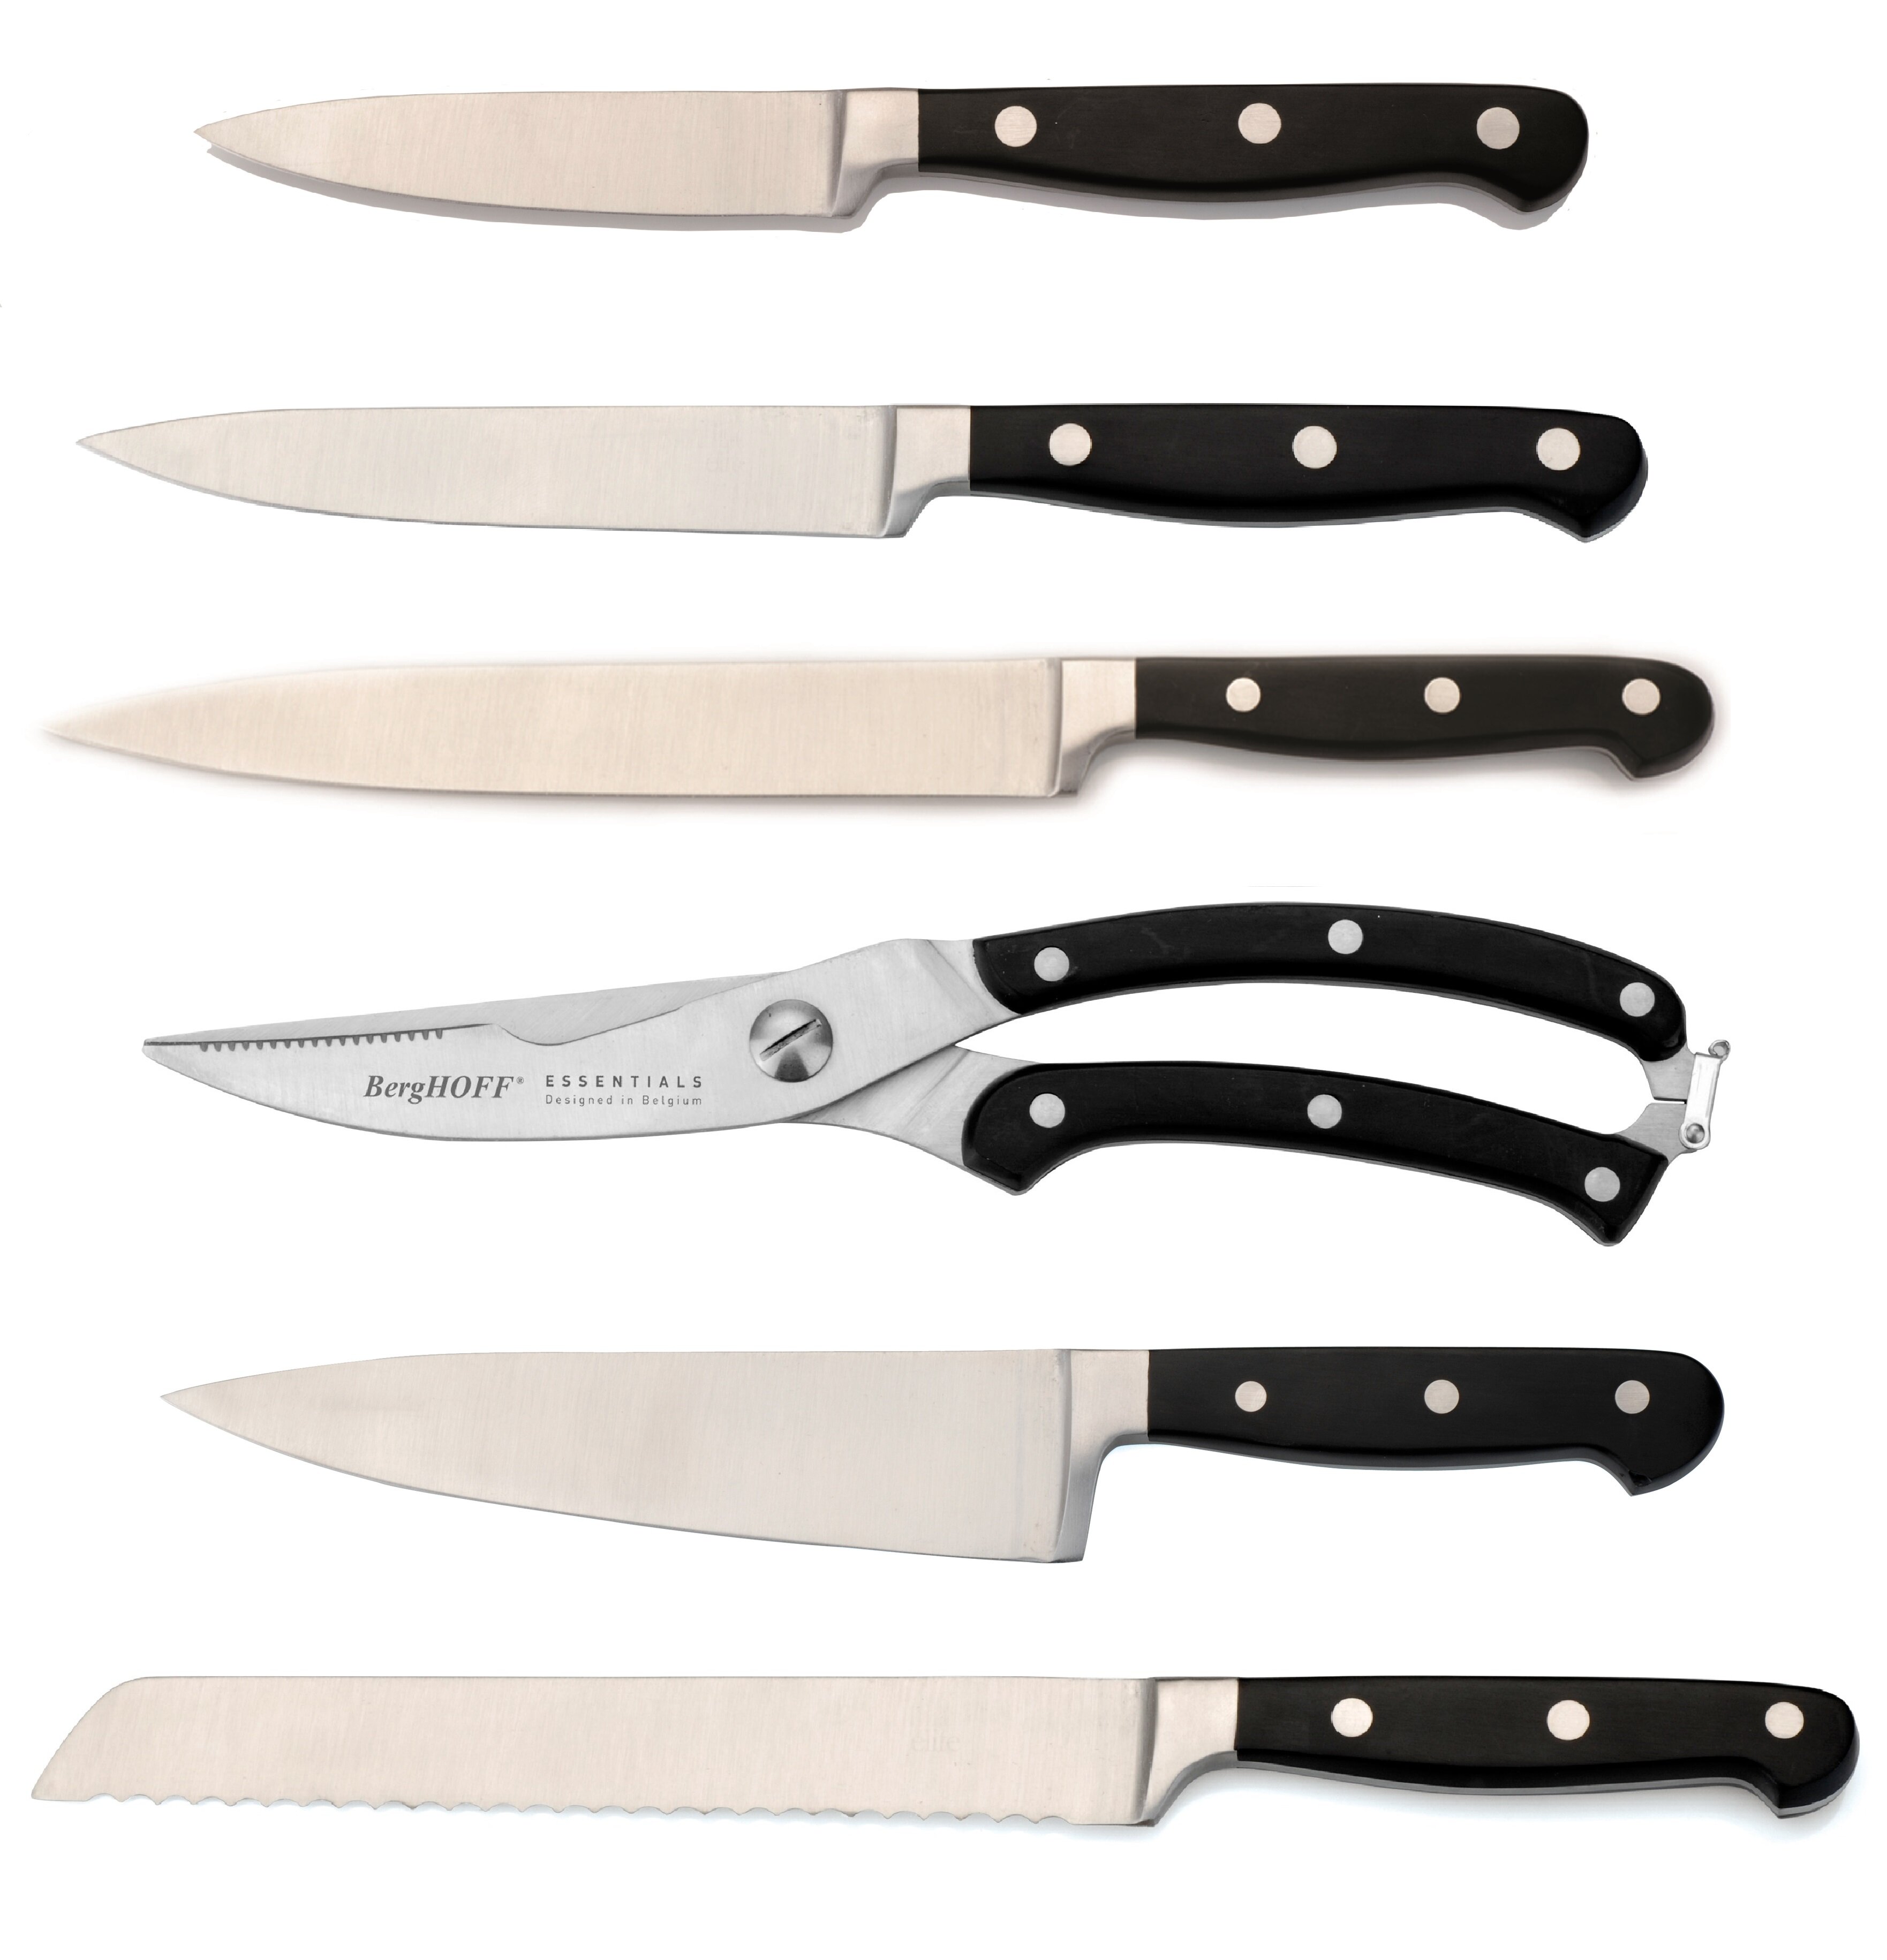 https://assets.wfcdn.com/im/67750528/compr-r85/8993/89939400/berghoff-international-essentials-6-piece-assorted-knife-set.jpg